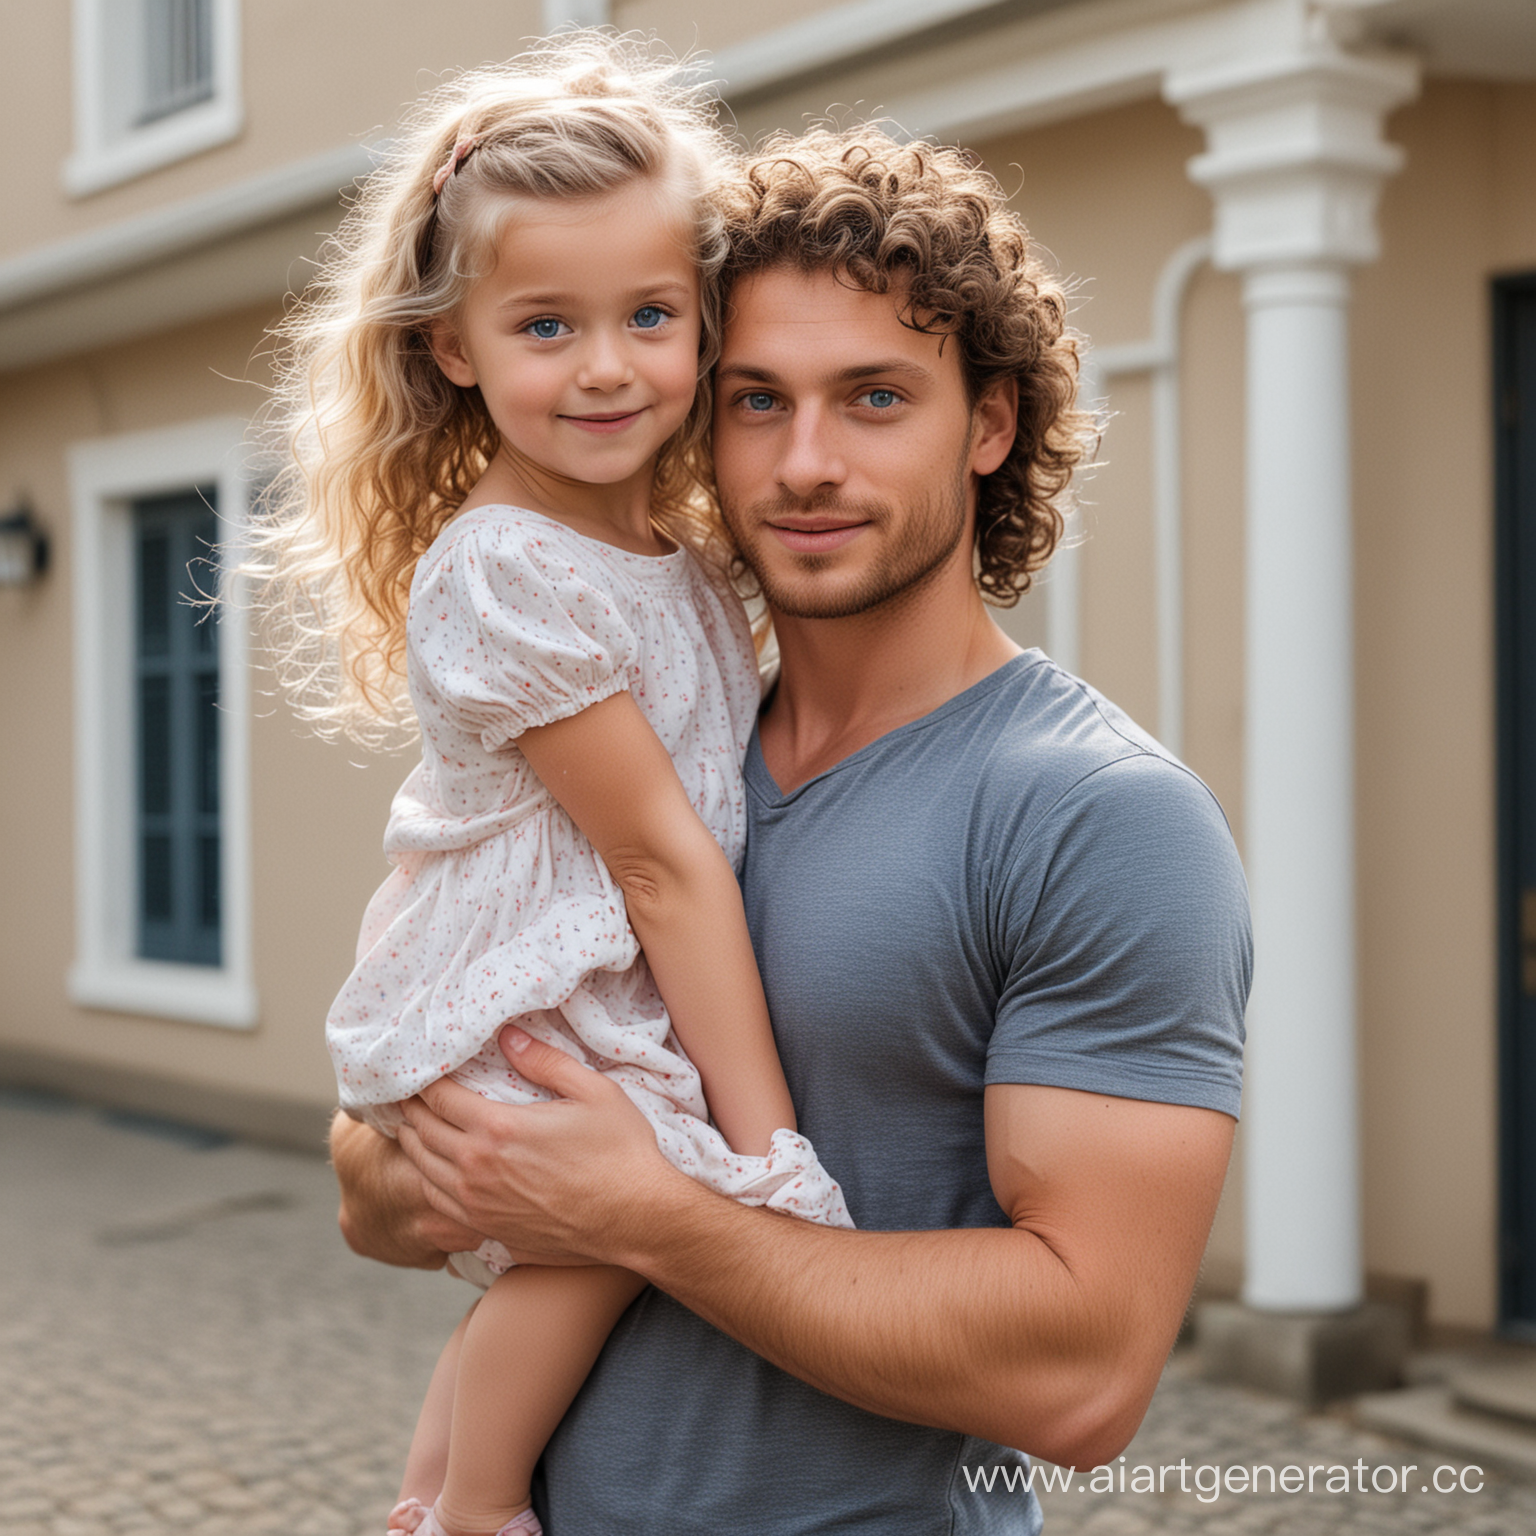 высокий молодой кудрявый парень с голубыми глазами держит на руках маленькую девочку со светлыми прямыми волосами. Стоят около дома 
